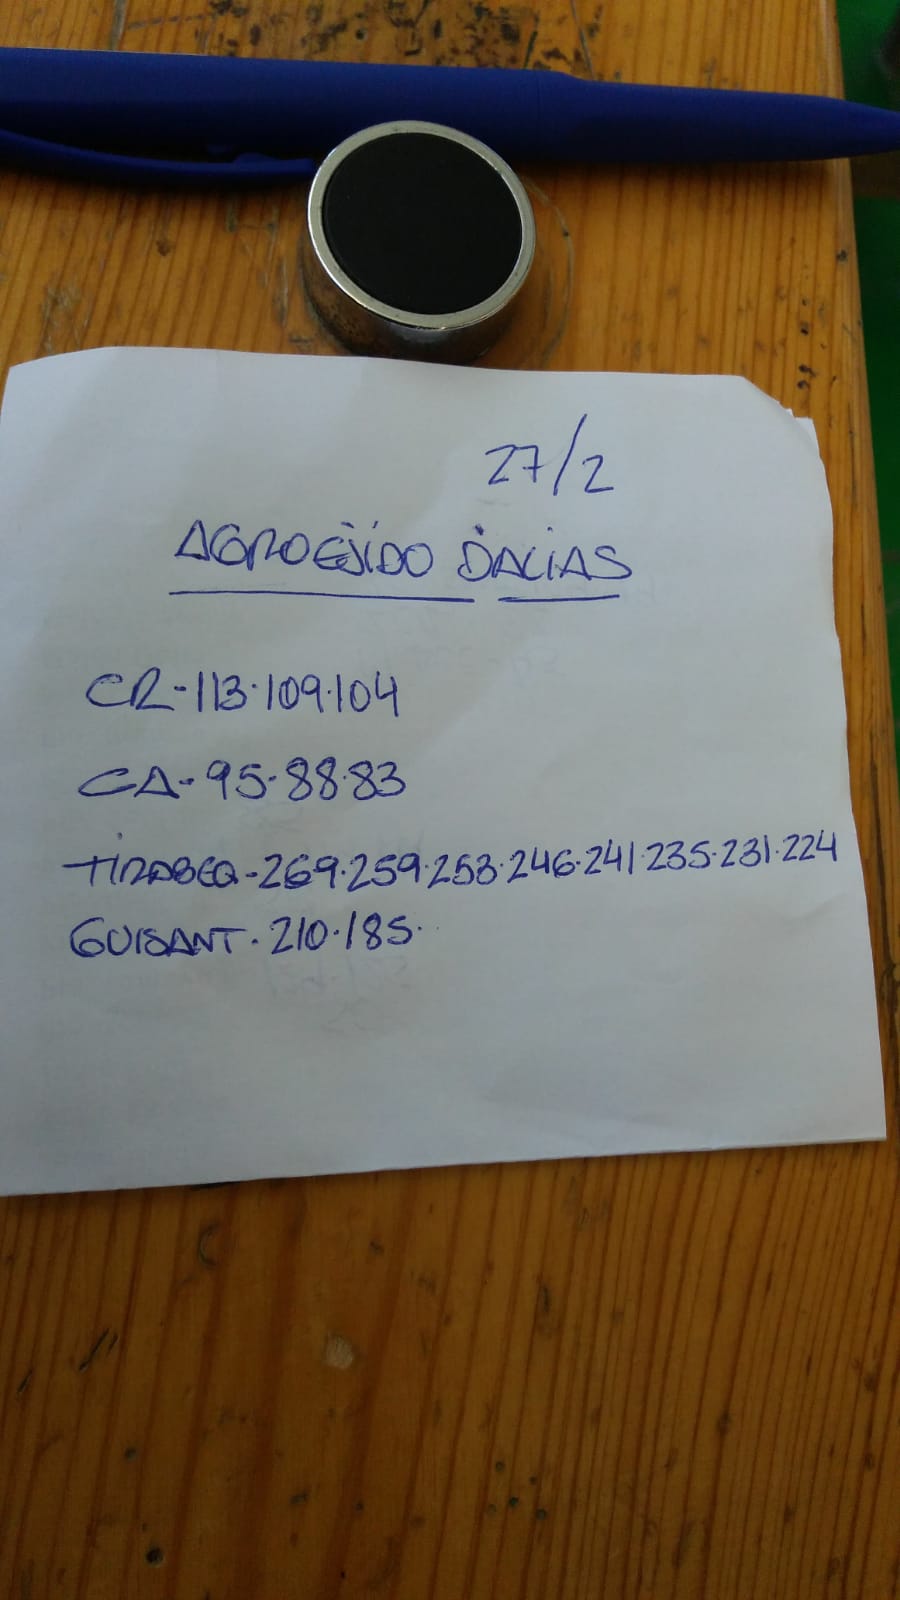 Subasta hortofrutícola AgroEjido Dalias 27 de Febrero 2019